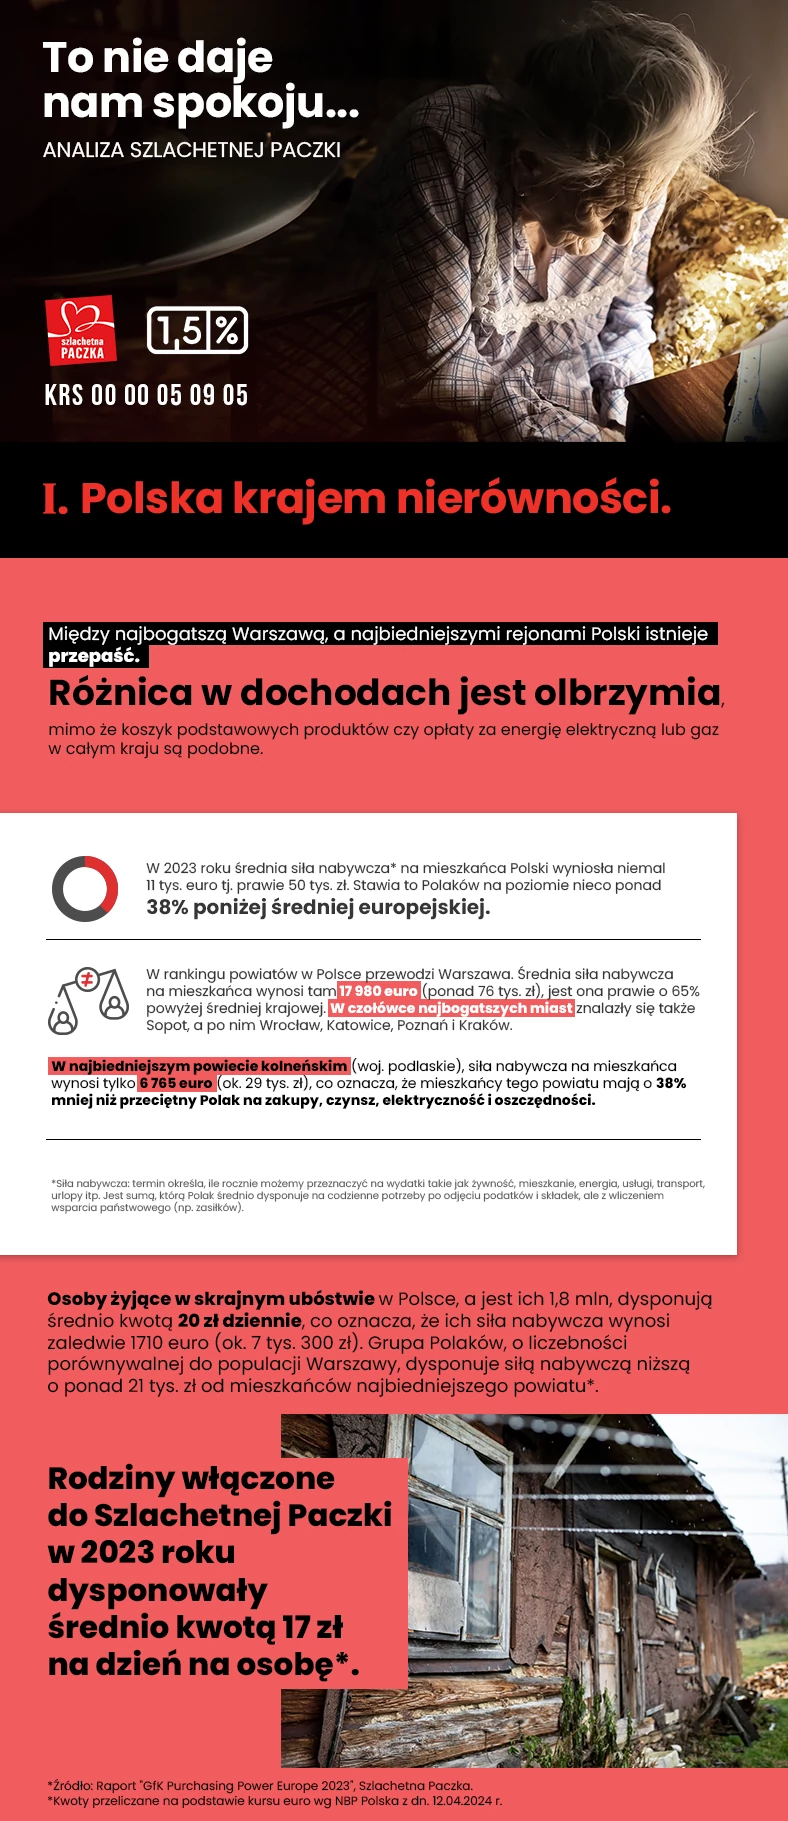 Polska krajem nierówności - infografika